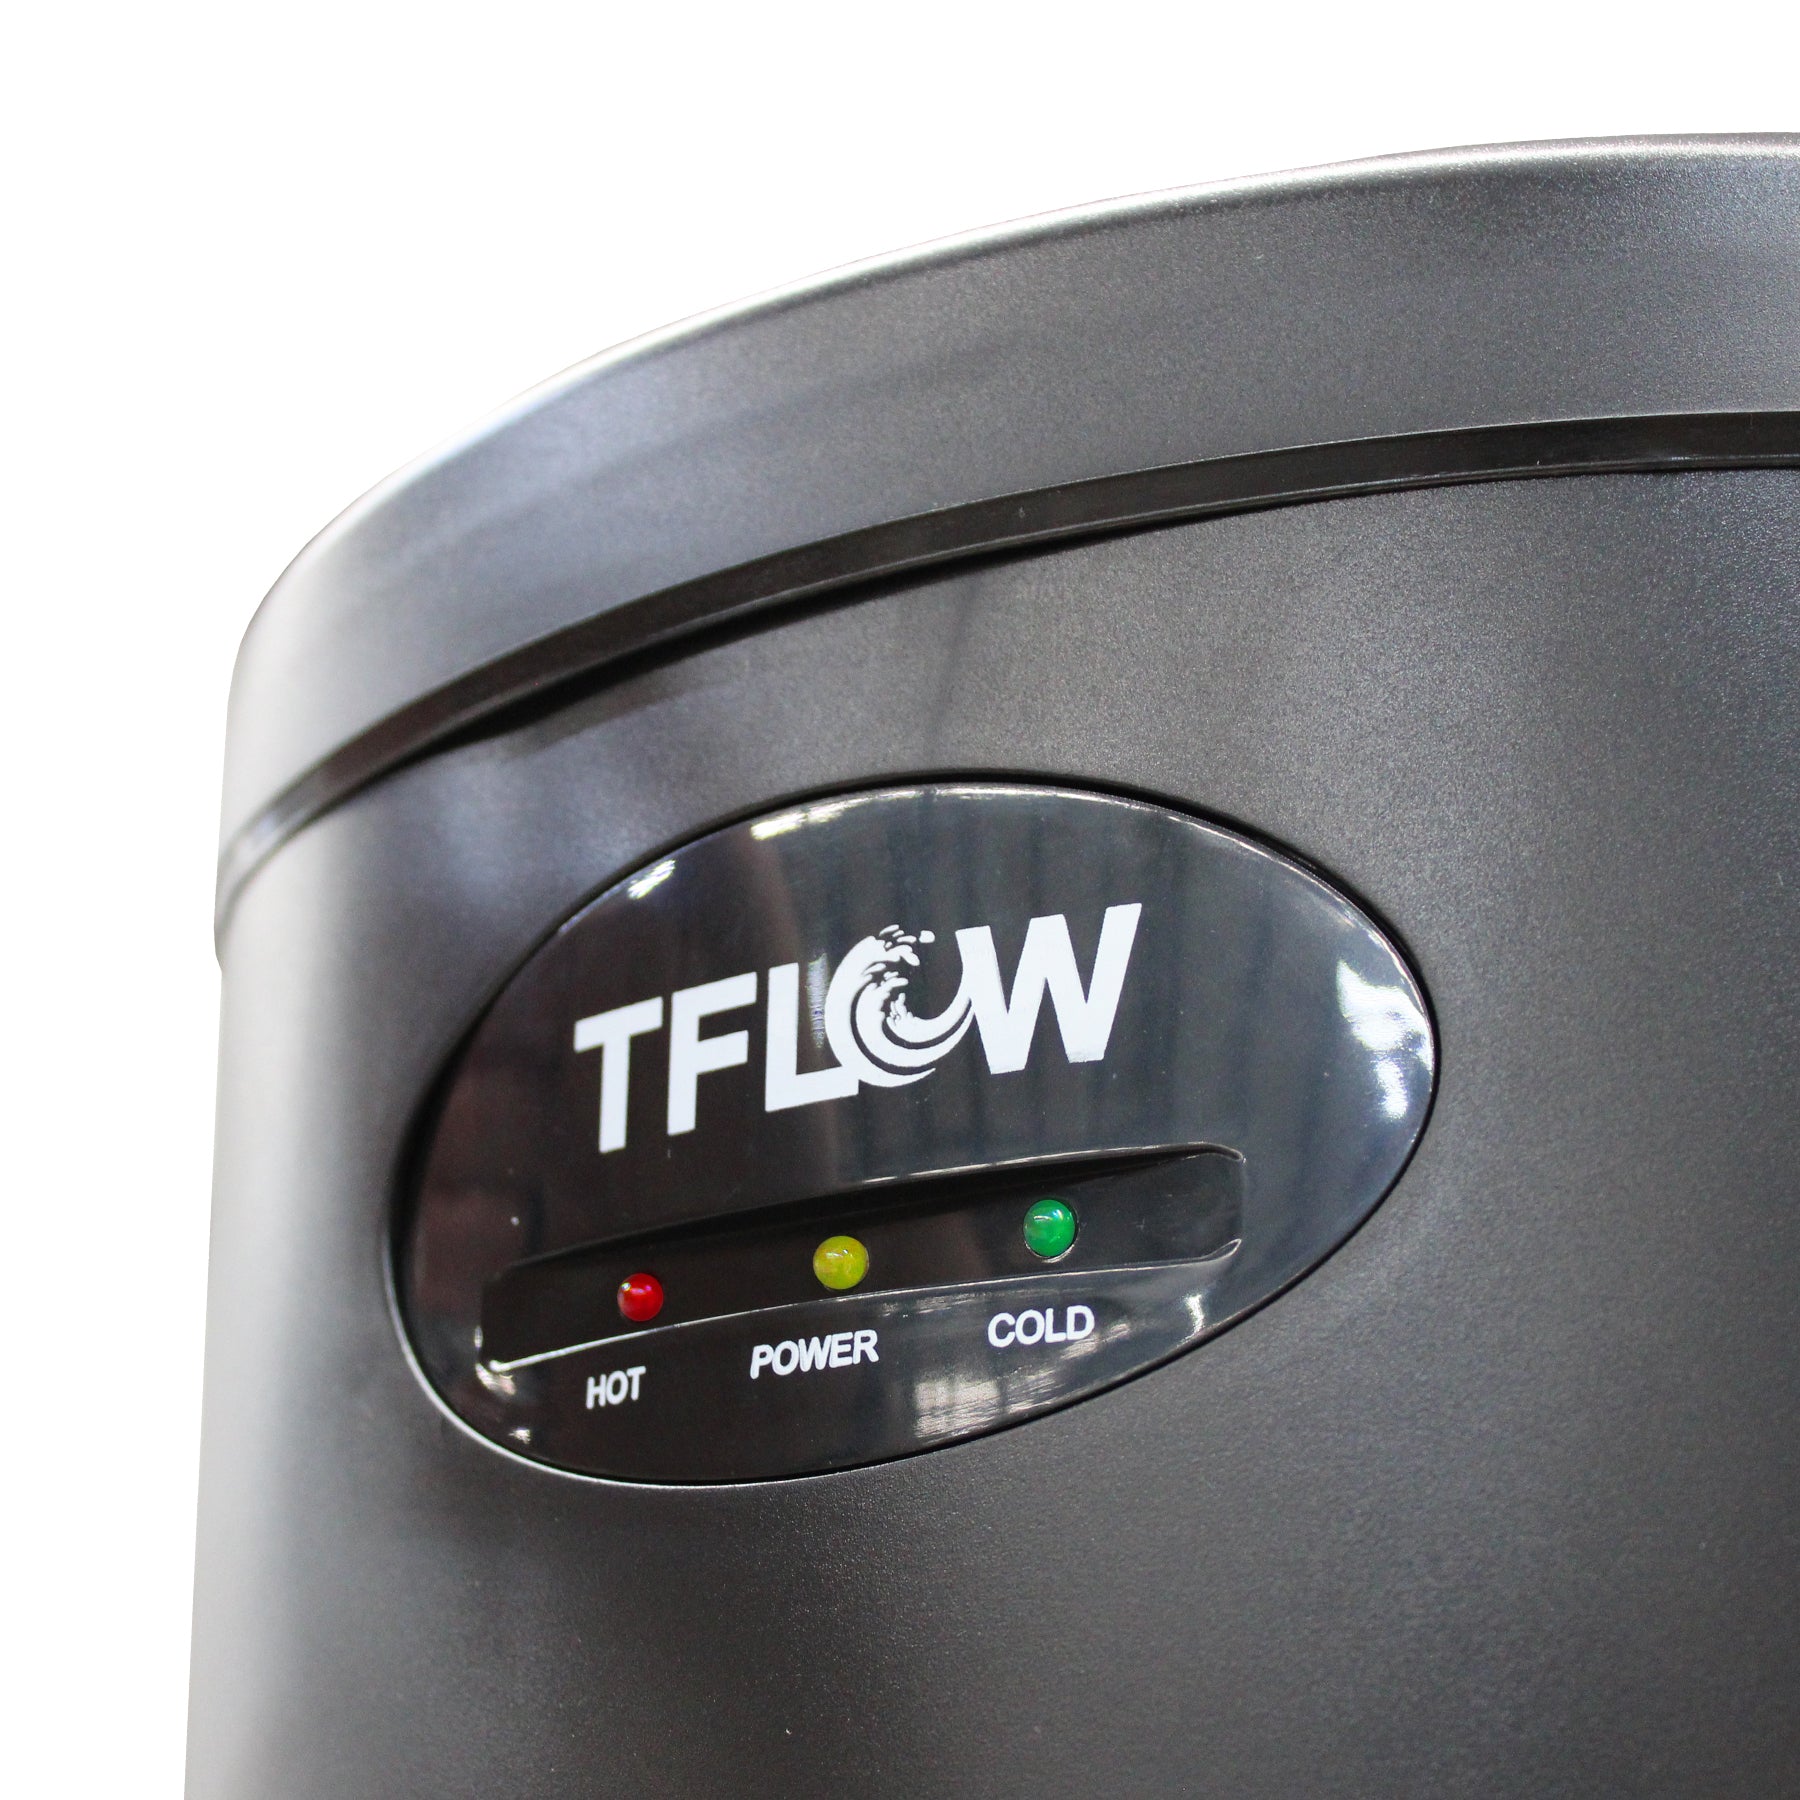 Dispensador (Enfriador) de Agua para Ósmosis Inversa - Servicio Frío / Caliente - TFLOW